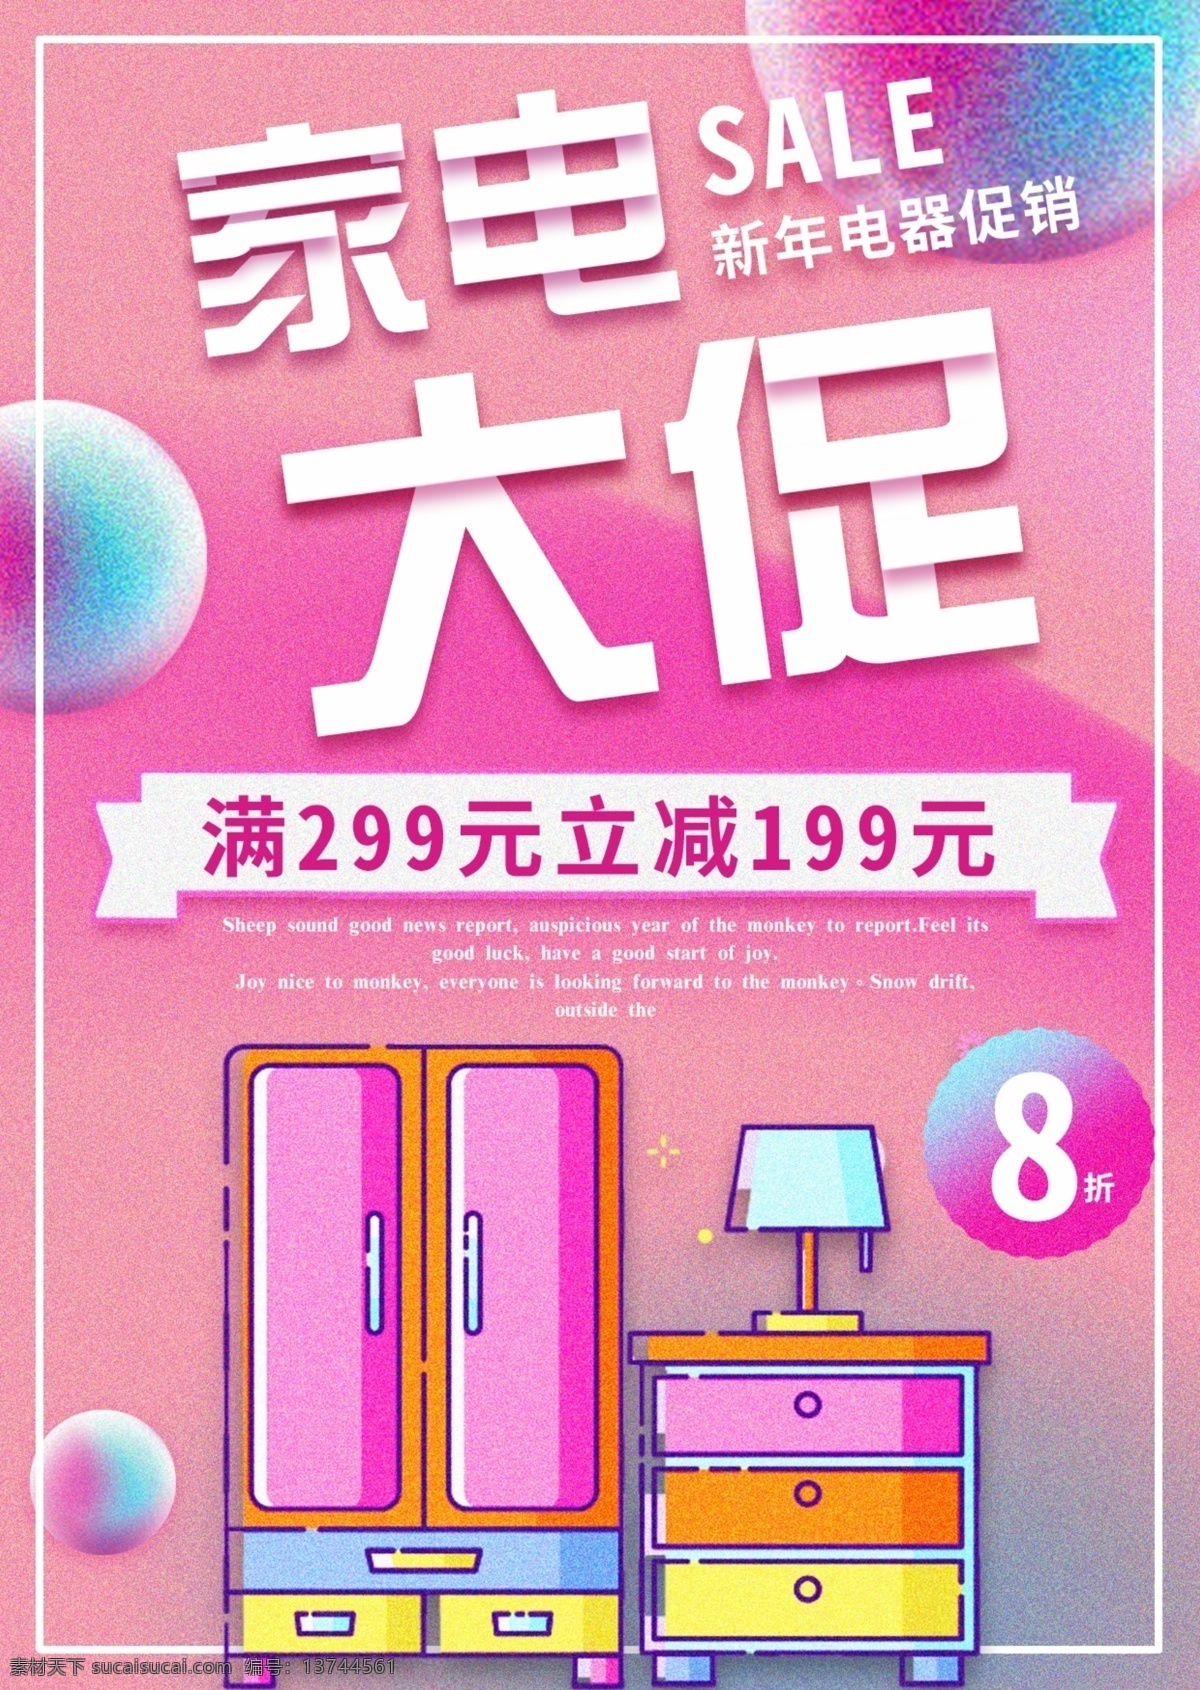 粉色 清新 浪漫 电器 促销 宣传单 模板 简约 新年 年货 免费